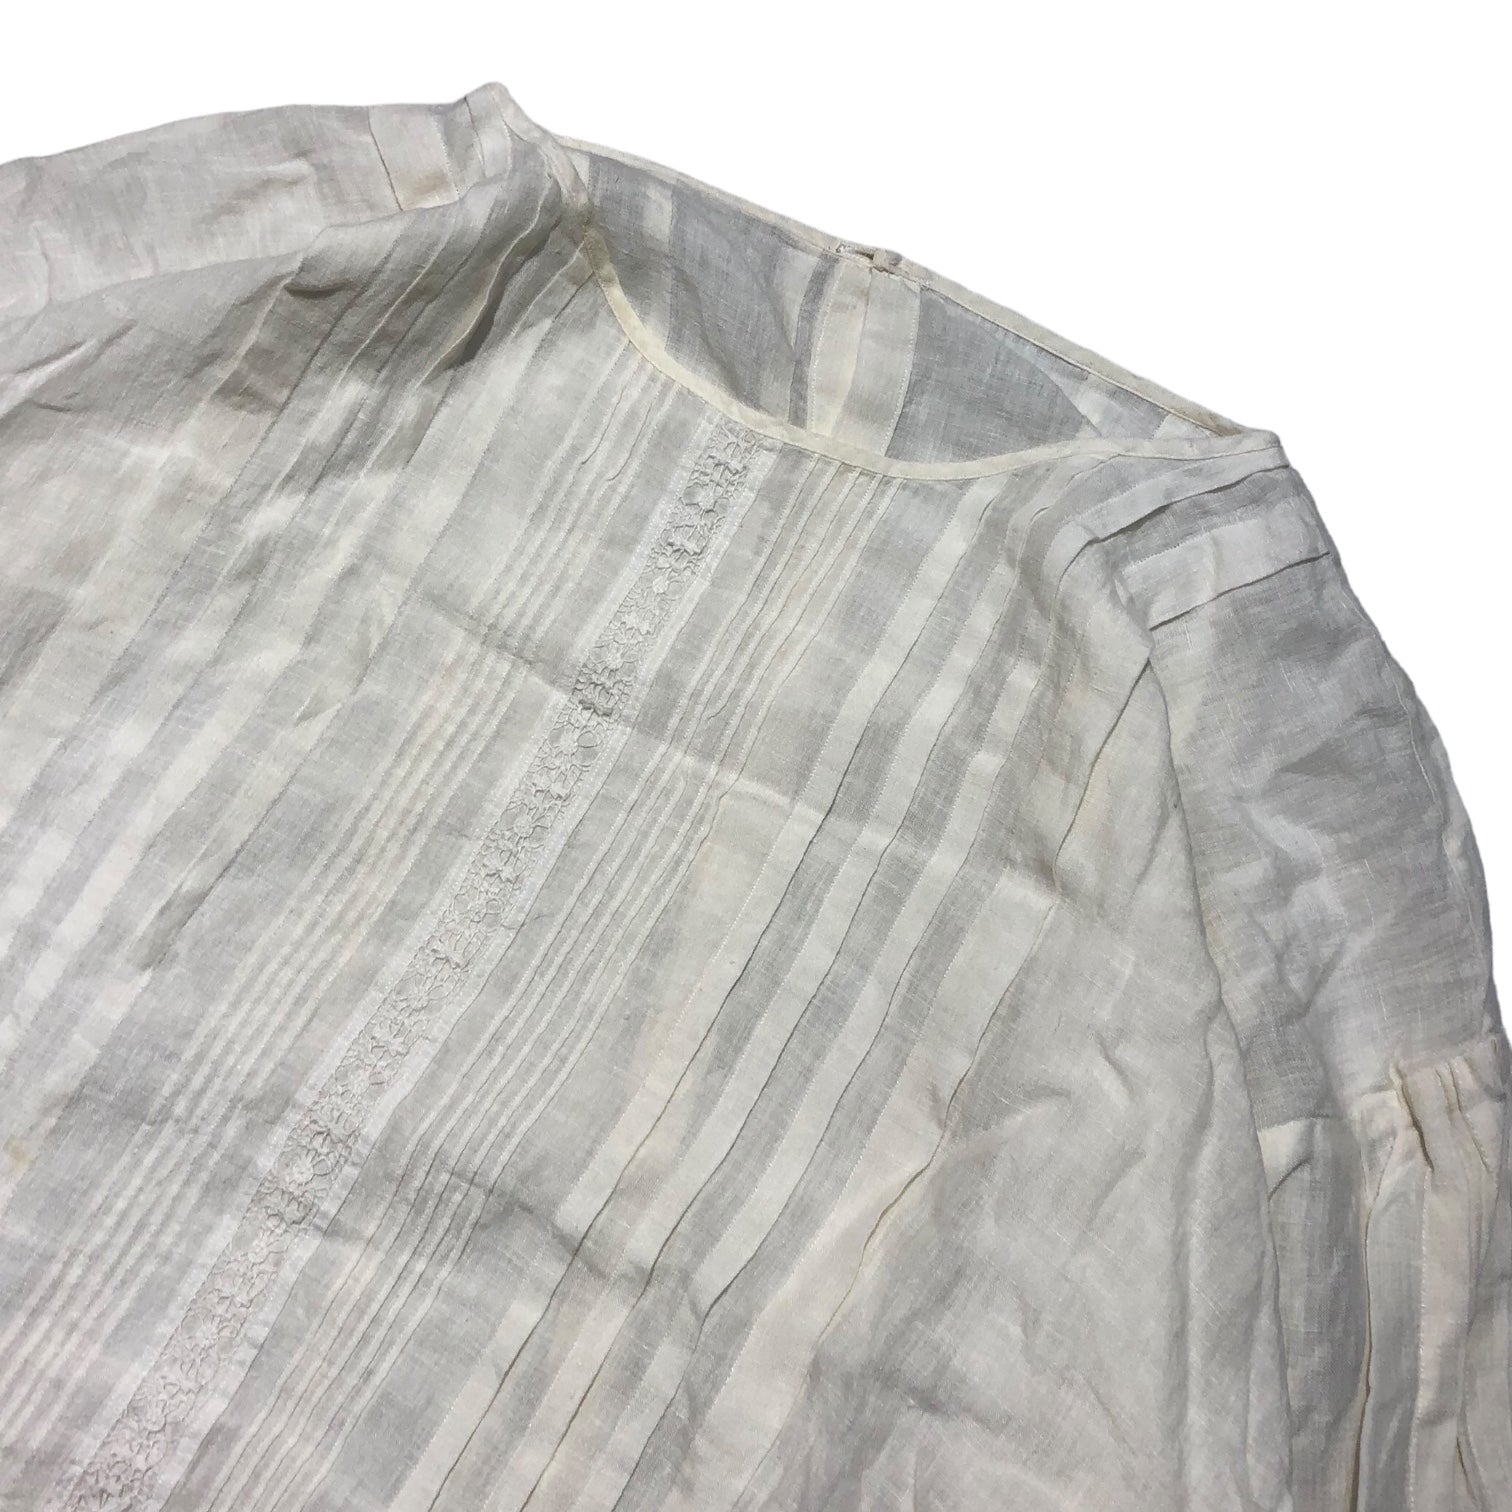 Vlas Blomme(ヴラスブラム) linen blouse コルトレイク リネン ブラウス 131034 1(S) ホワイト